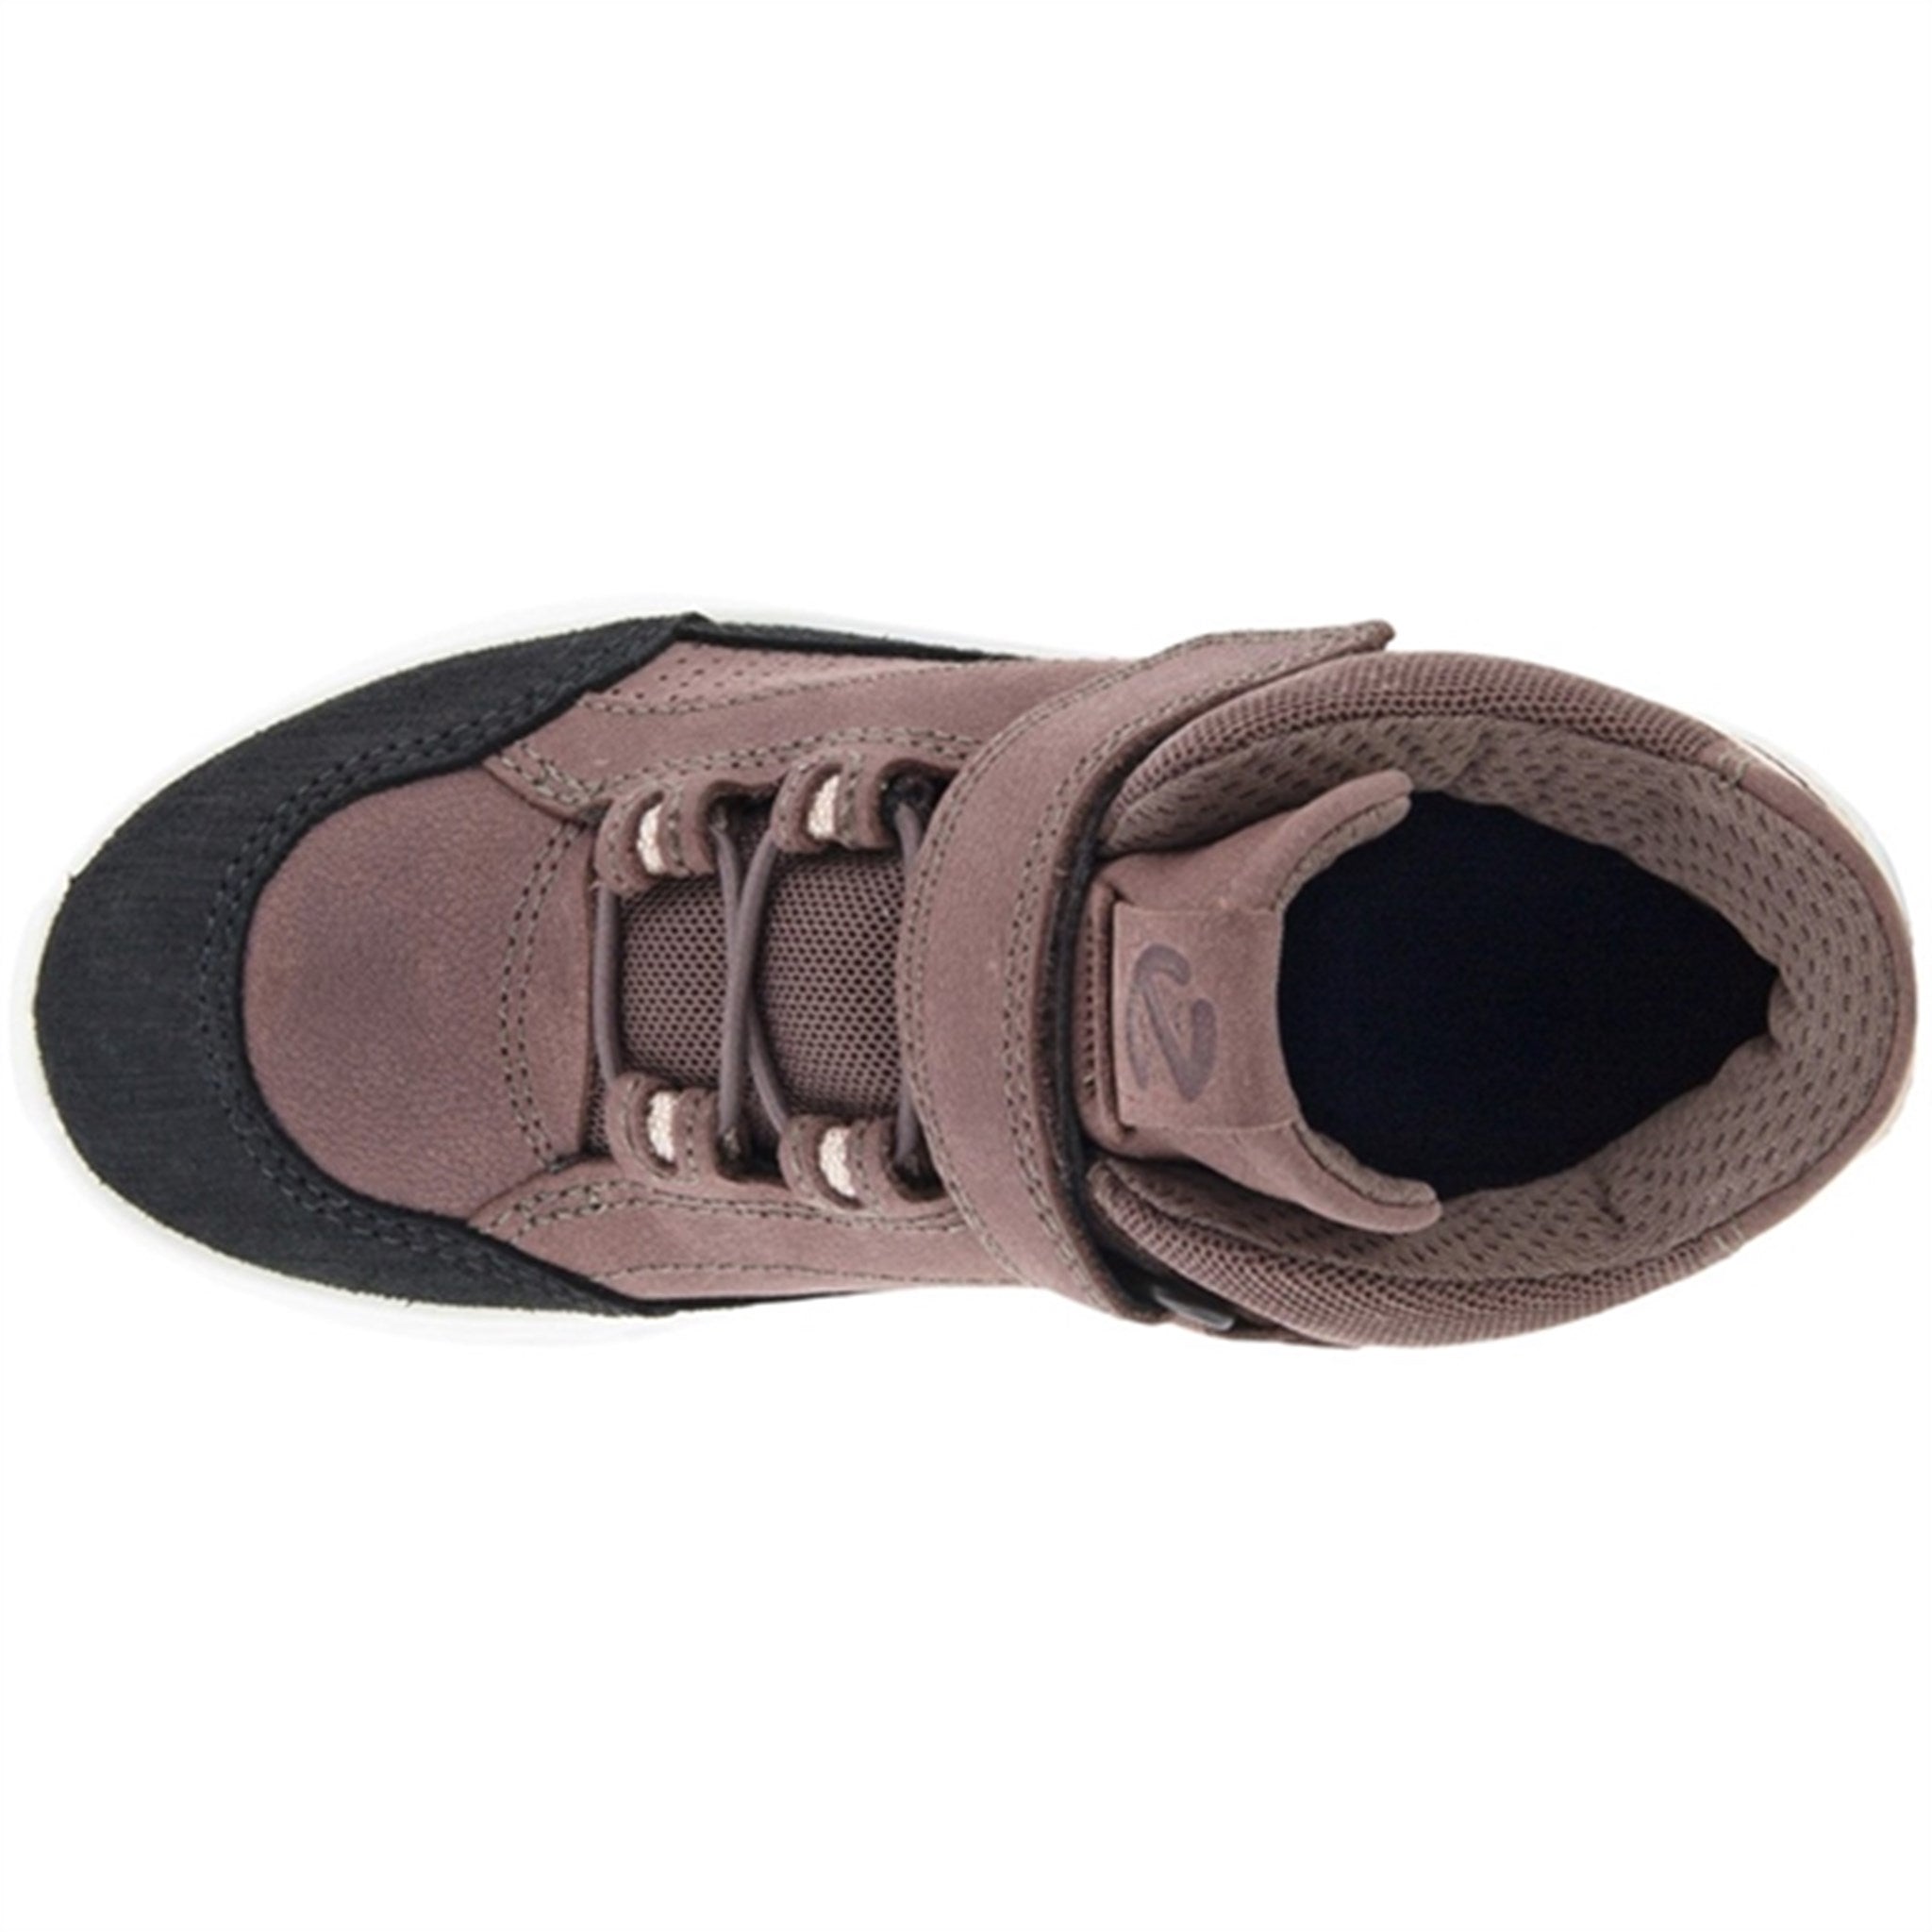 Ecco Exostrike Velcro Ankle Boot Black/Dusty Purple 5